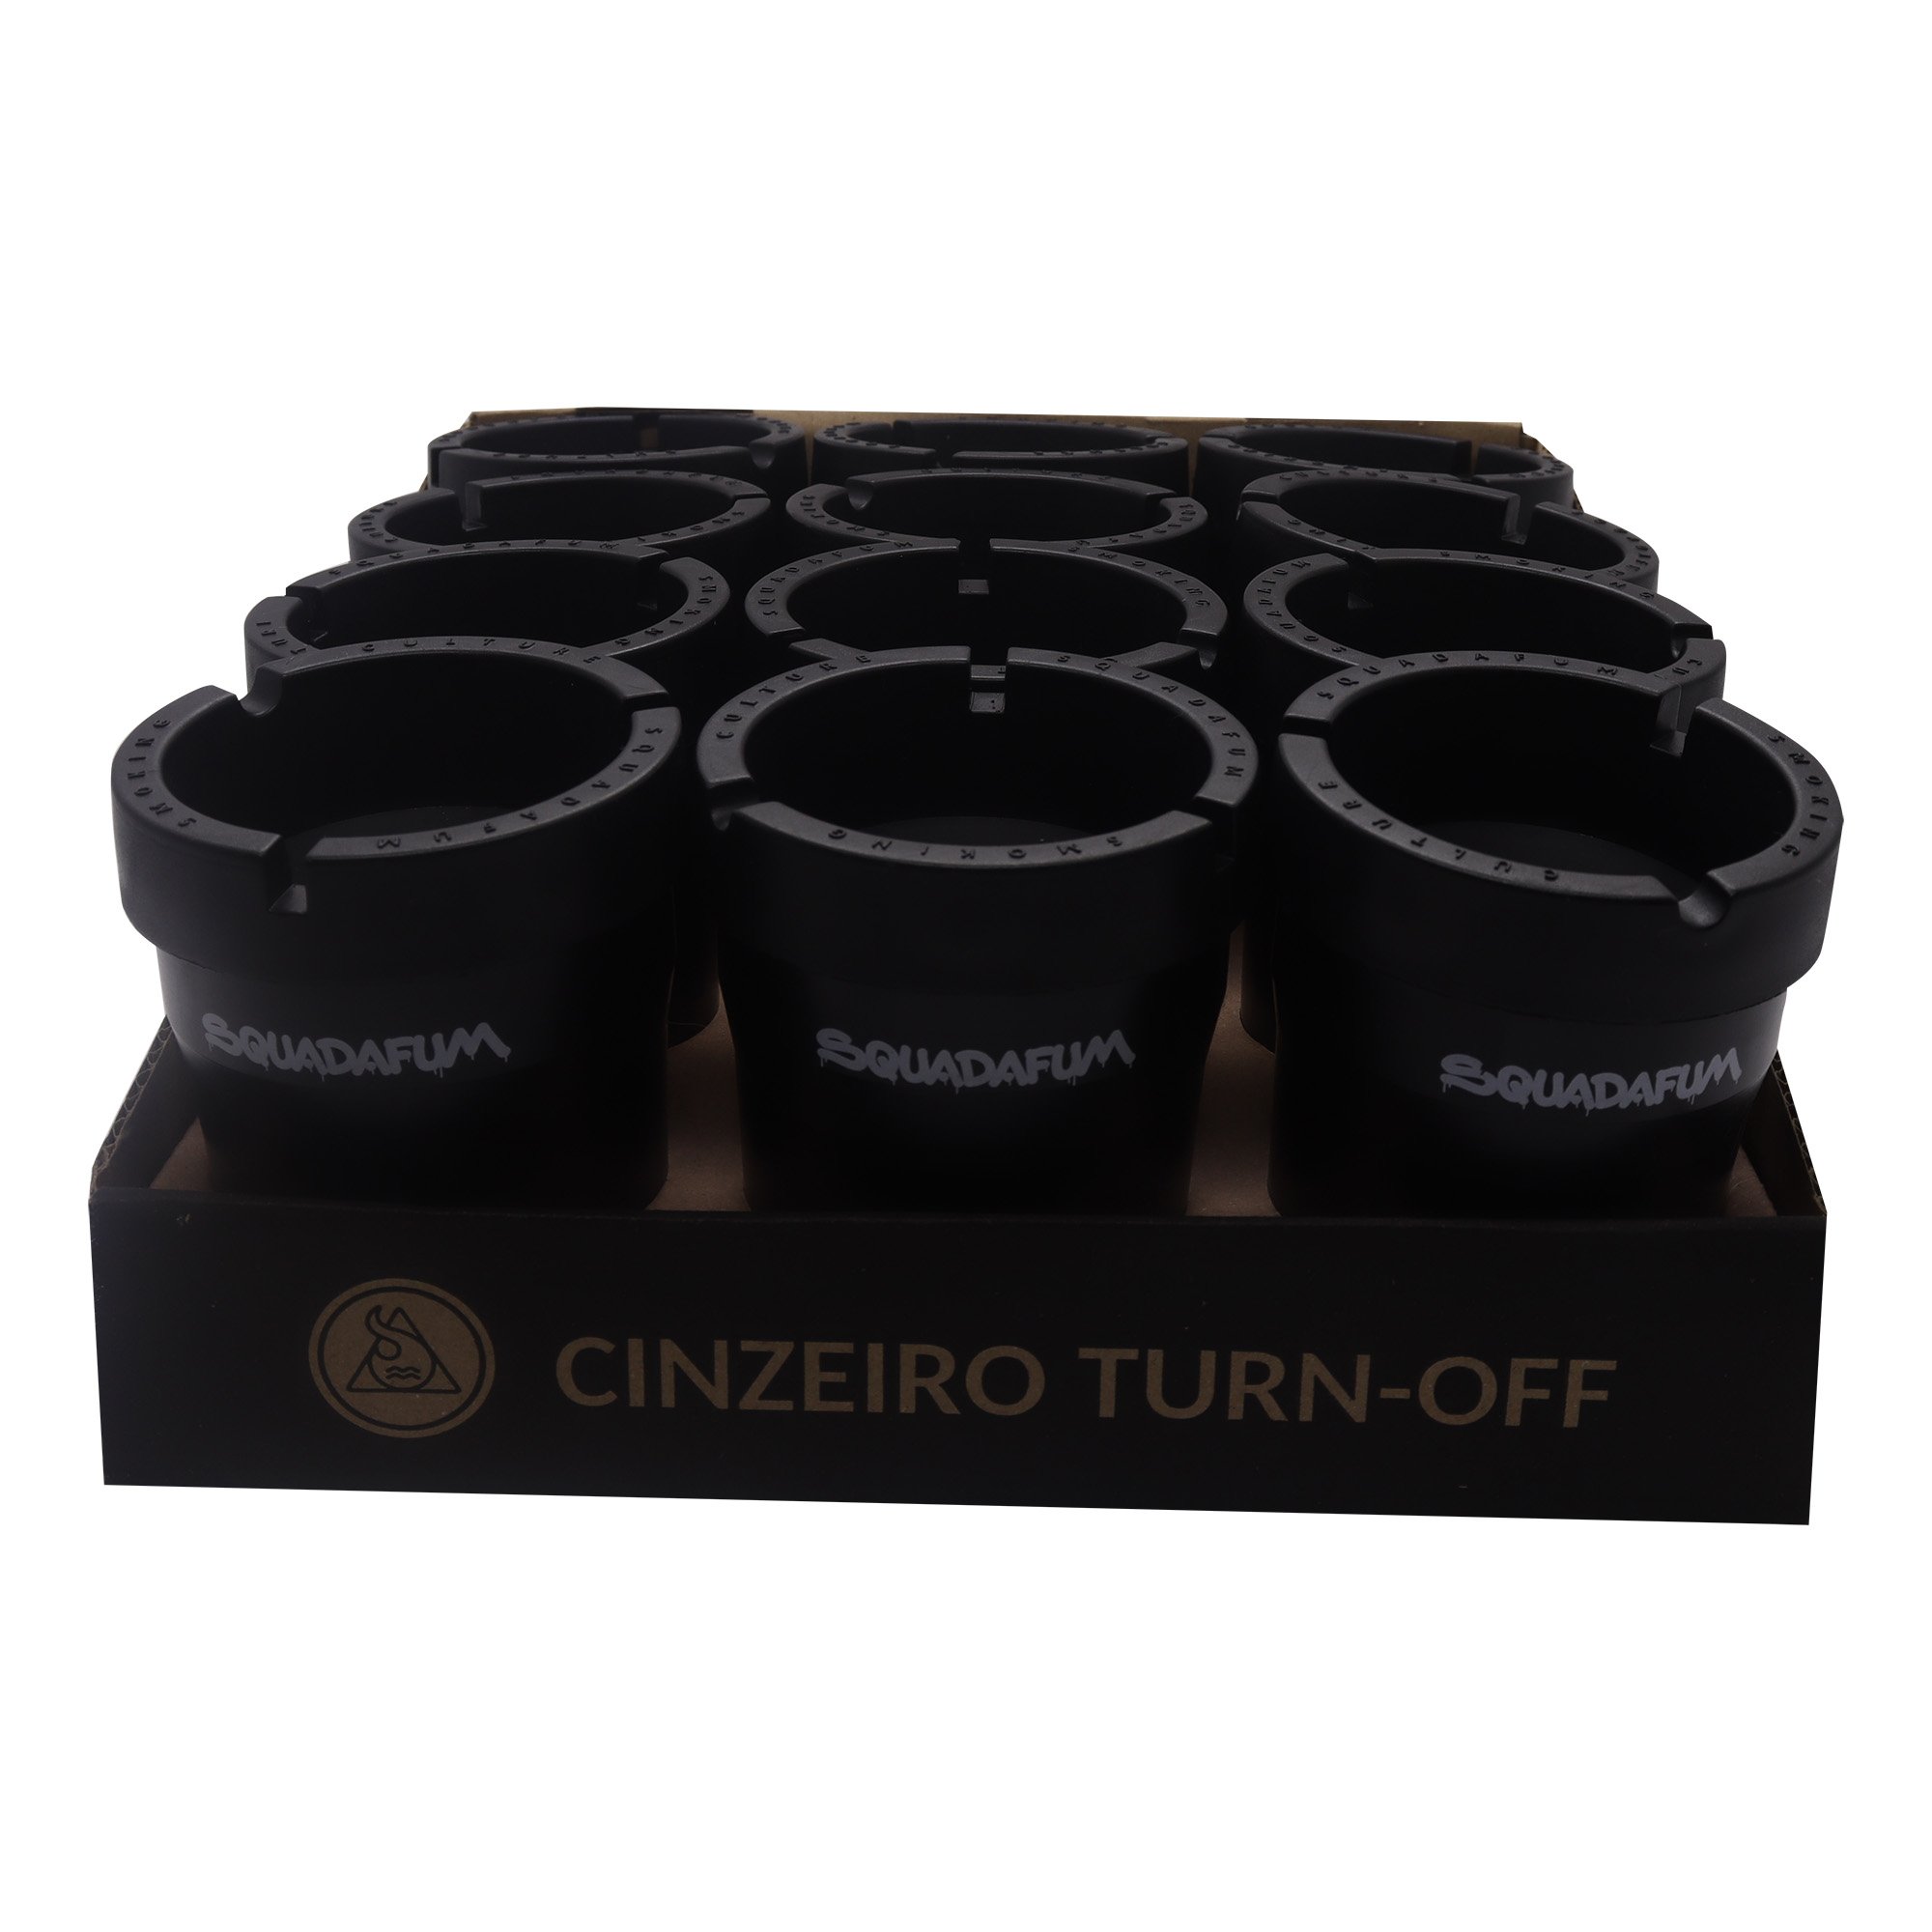 Cinzeiro Squadafum Turn Off Cores Display com 12 Unidades - 2